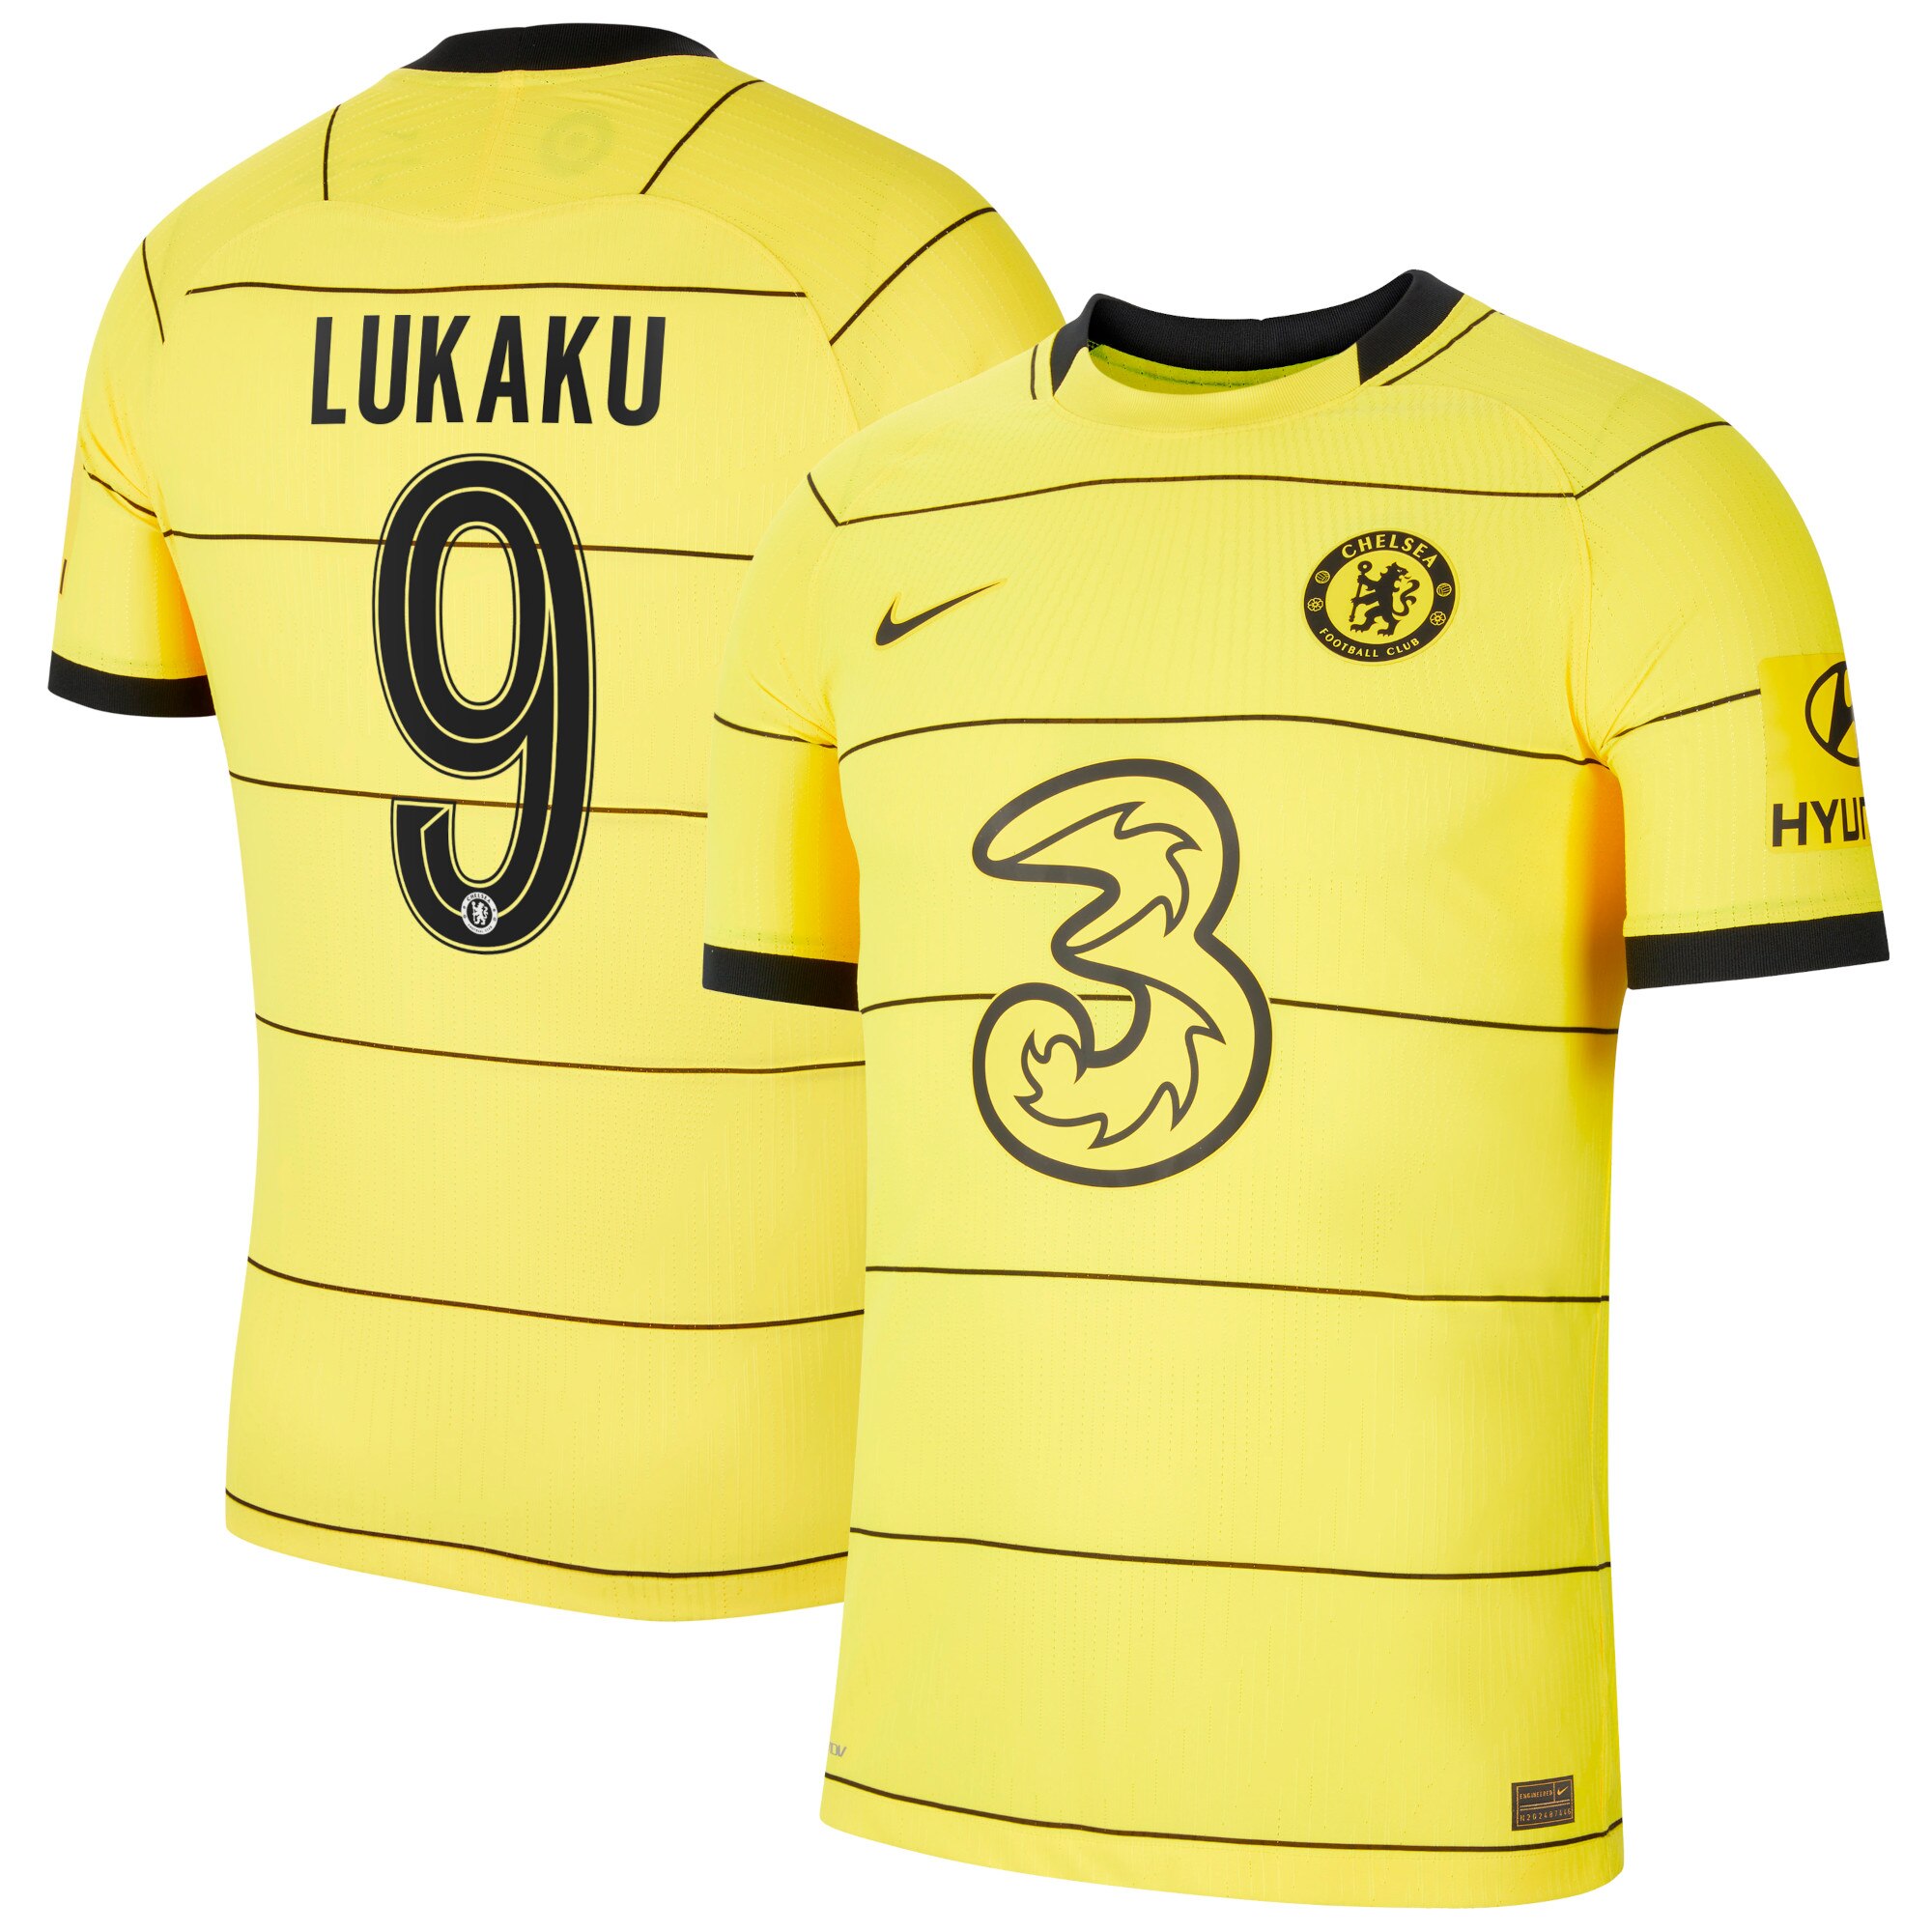 Chelsea Cup Away Vapor Match Shirt 2021-22 with Lukaku 9 printing